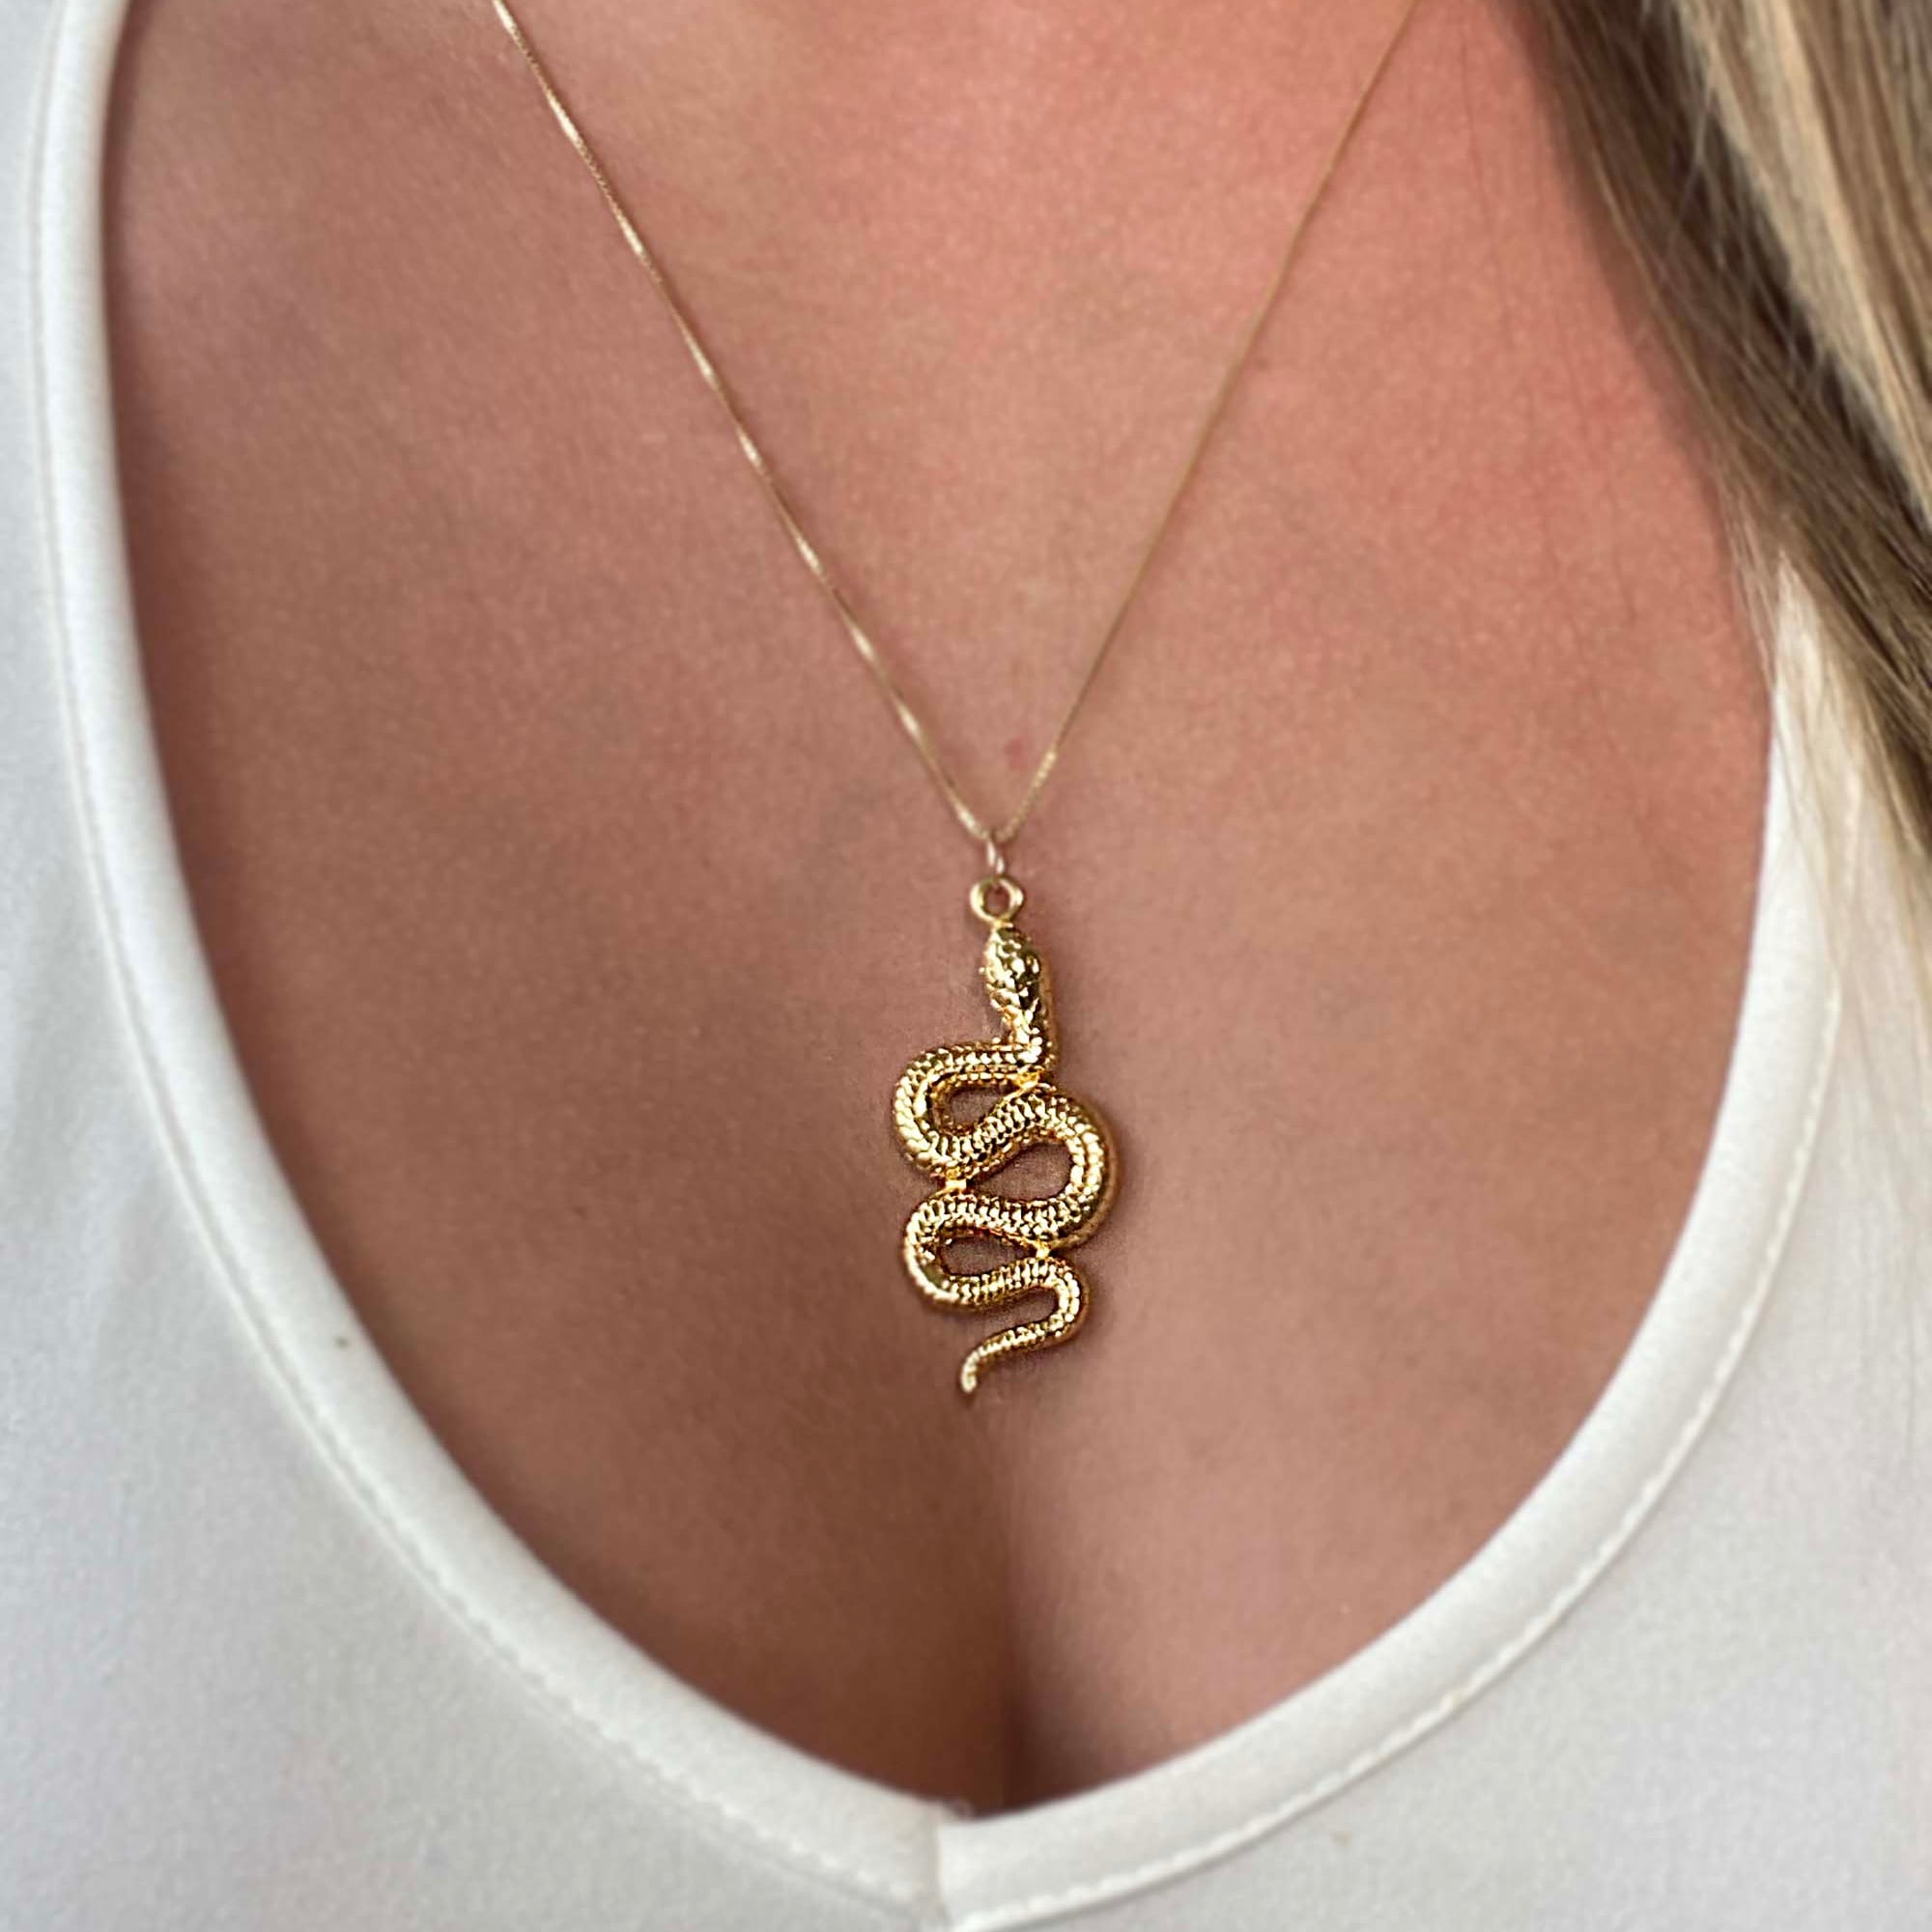 etched snake necklace 14k gold filled